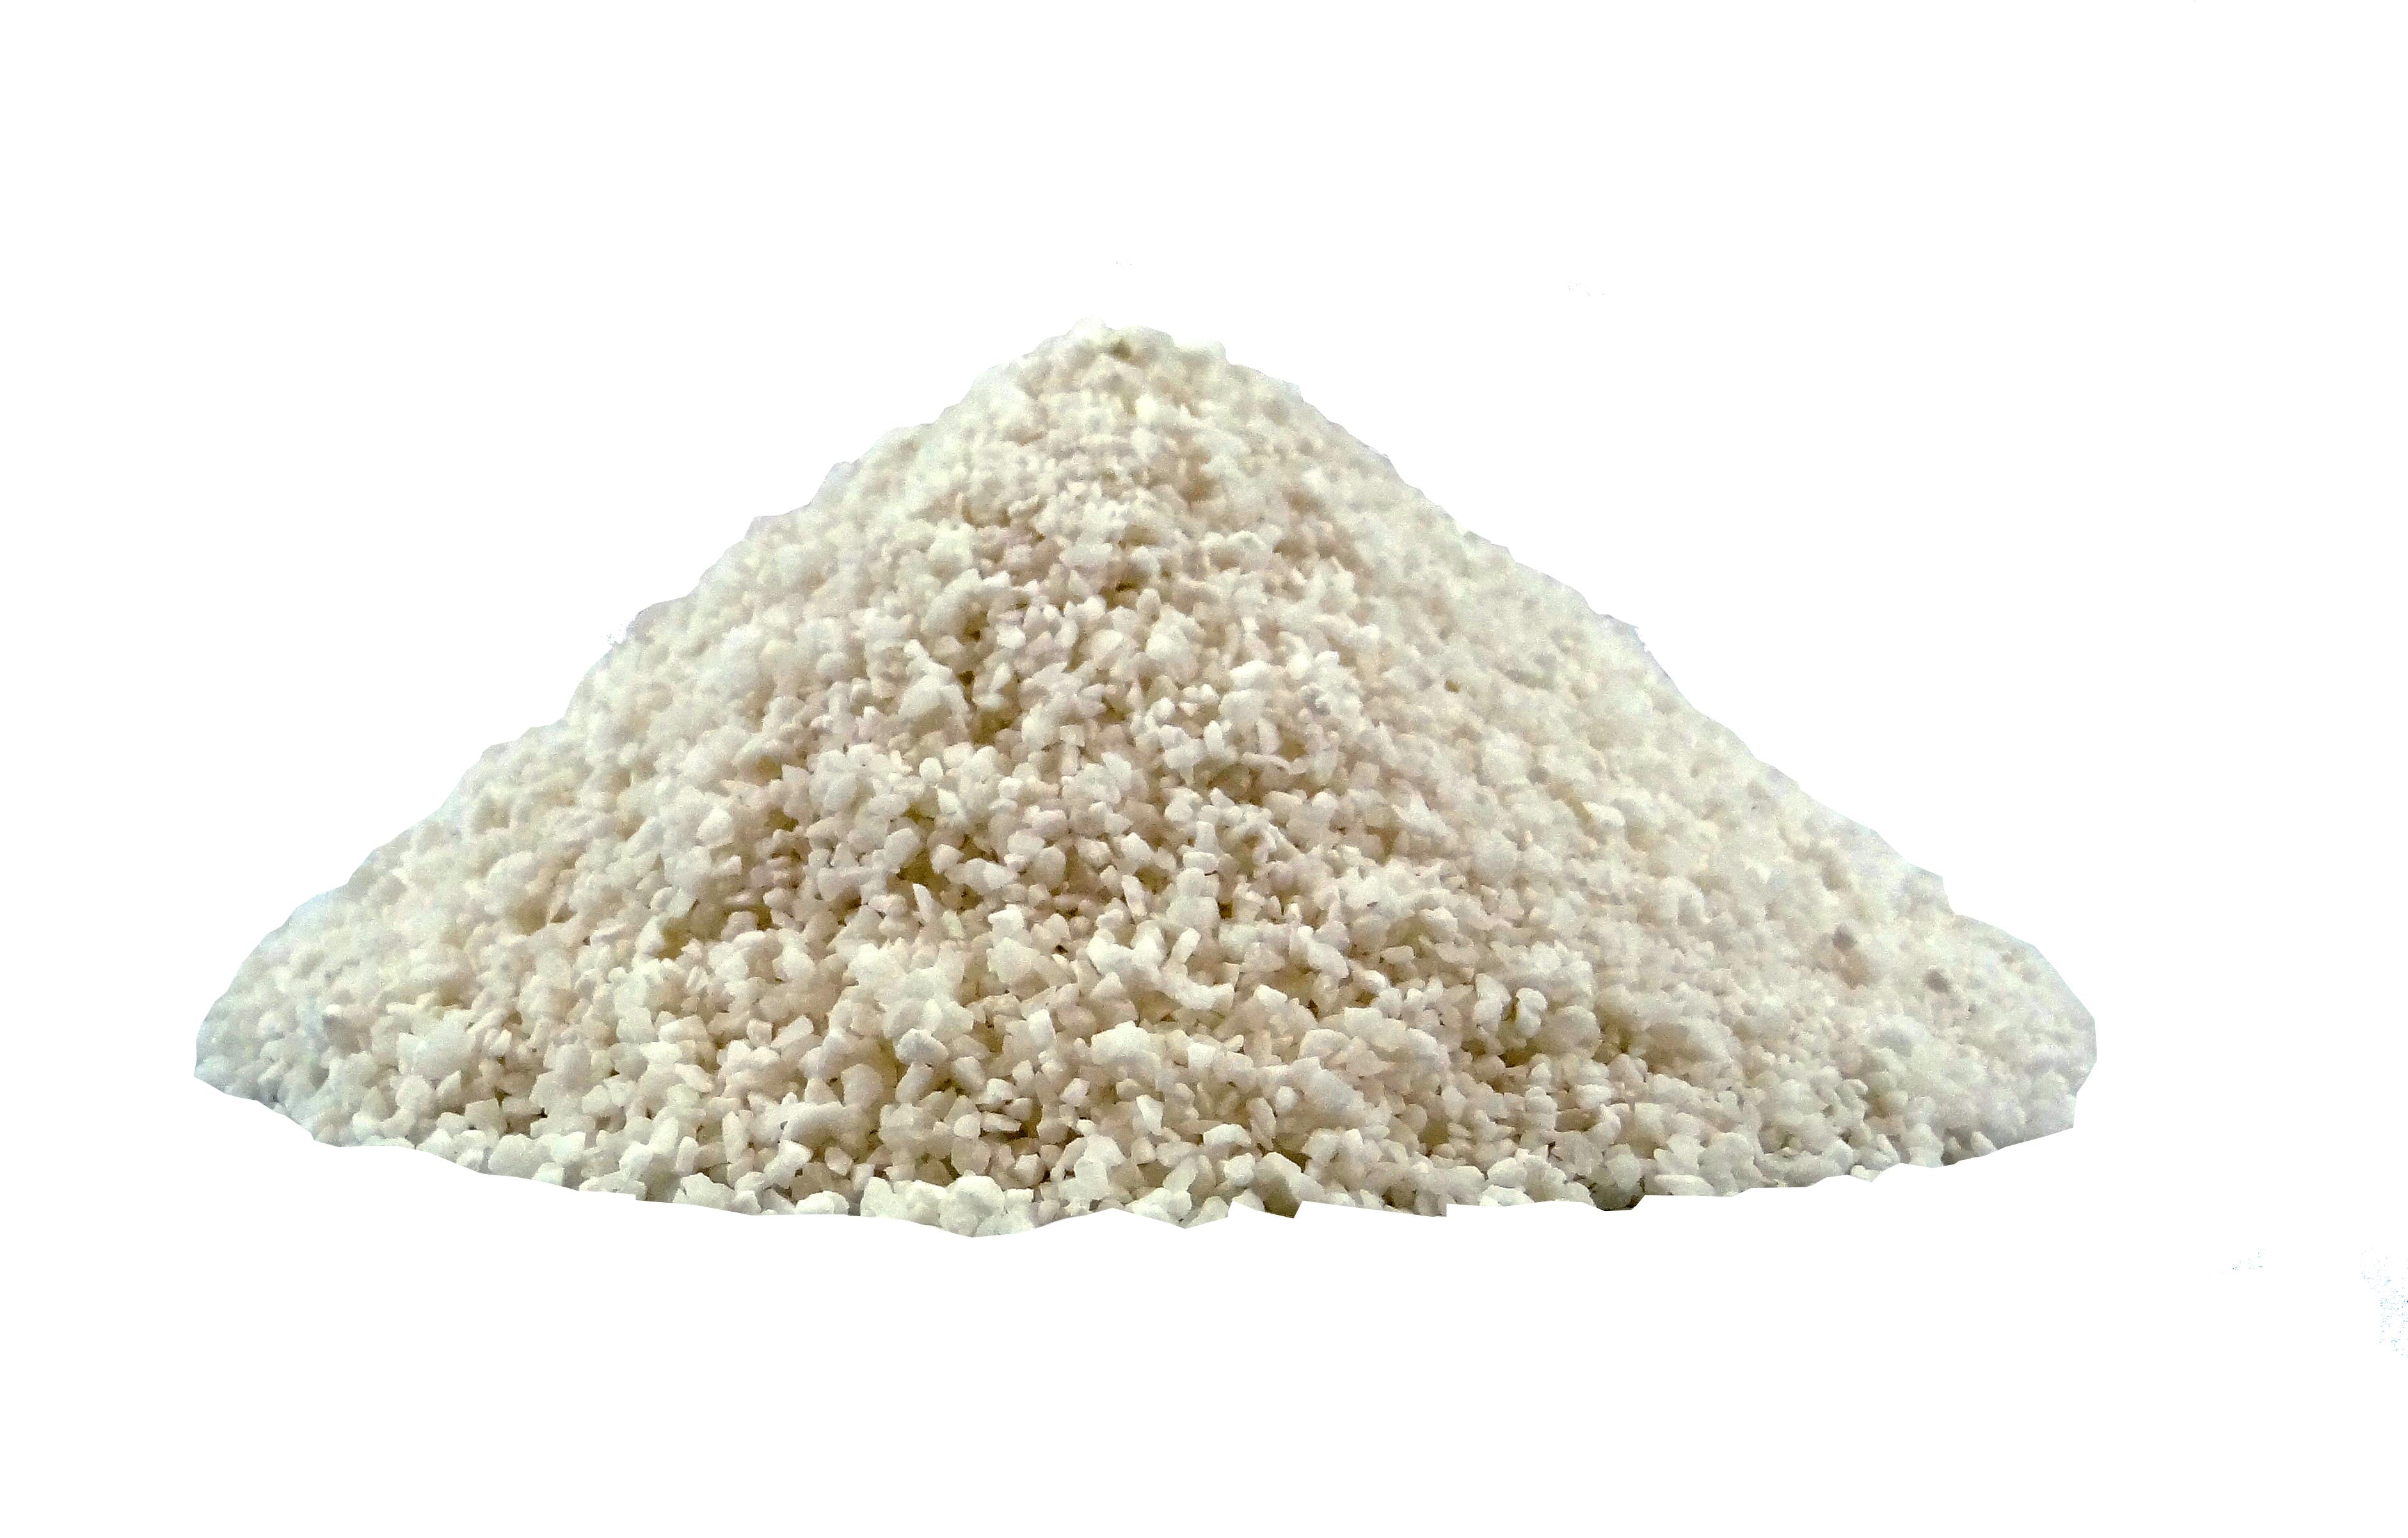 Aluminum Sulfate (Alum)